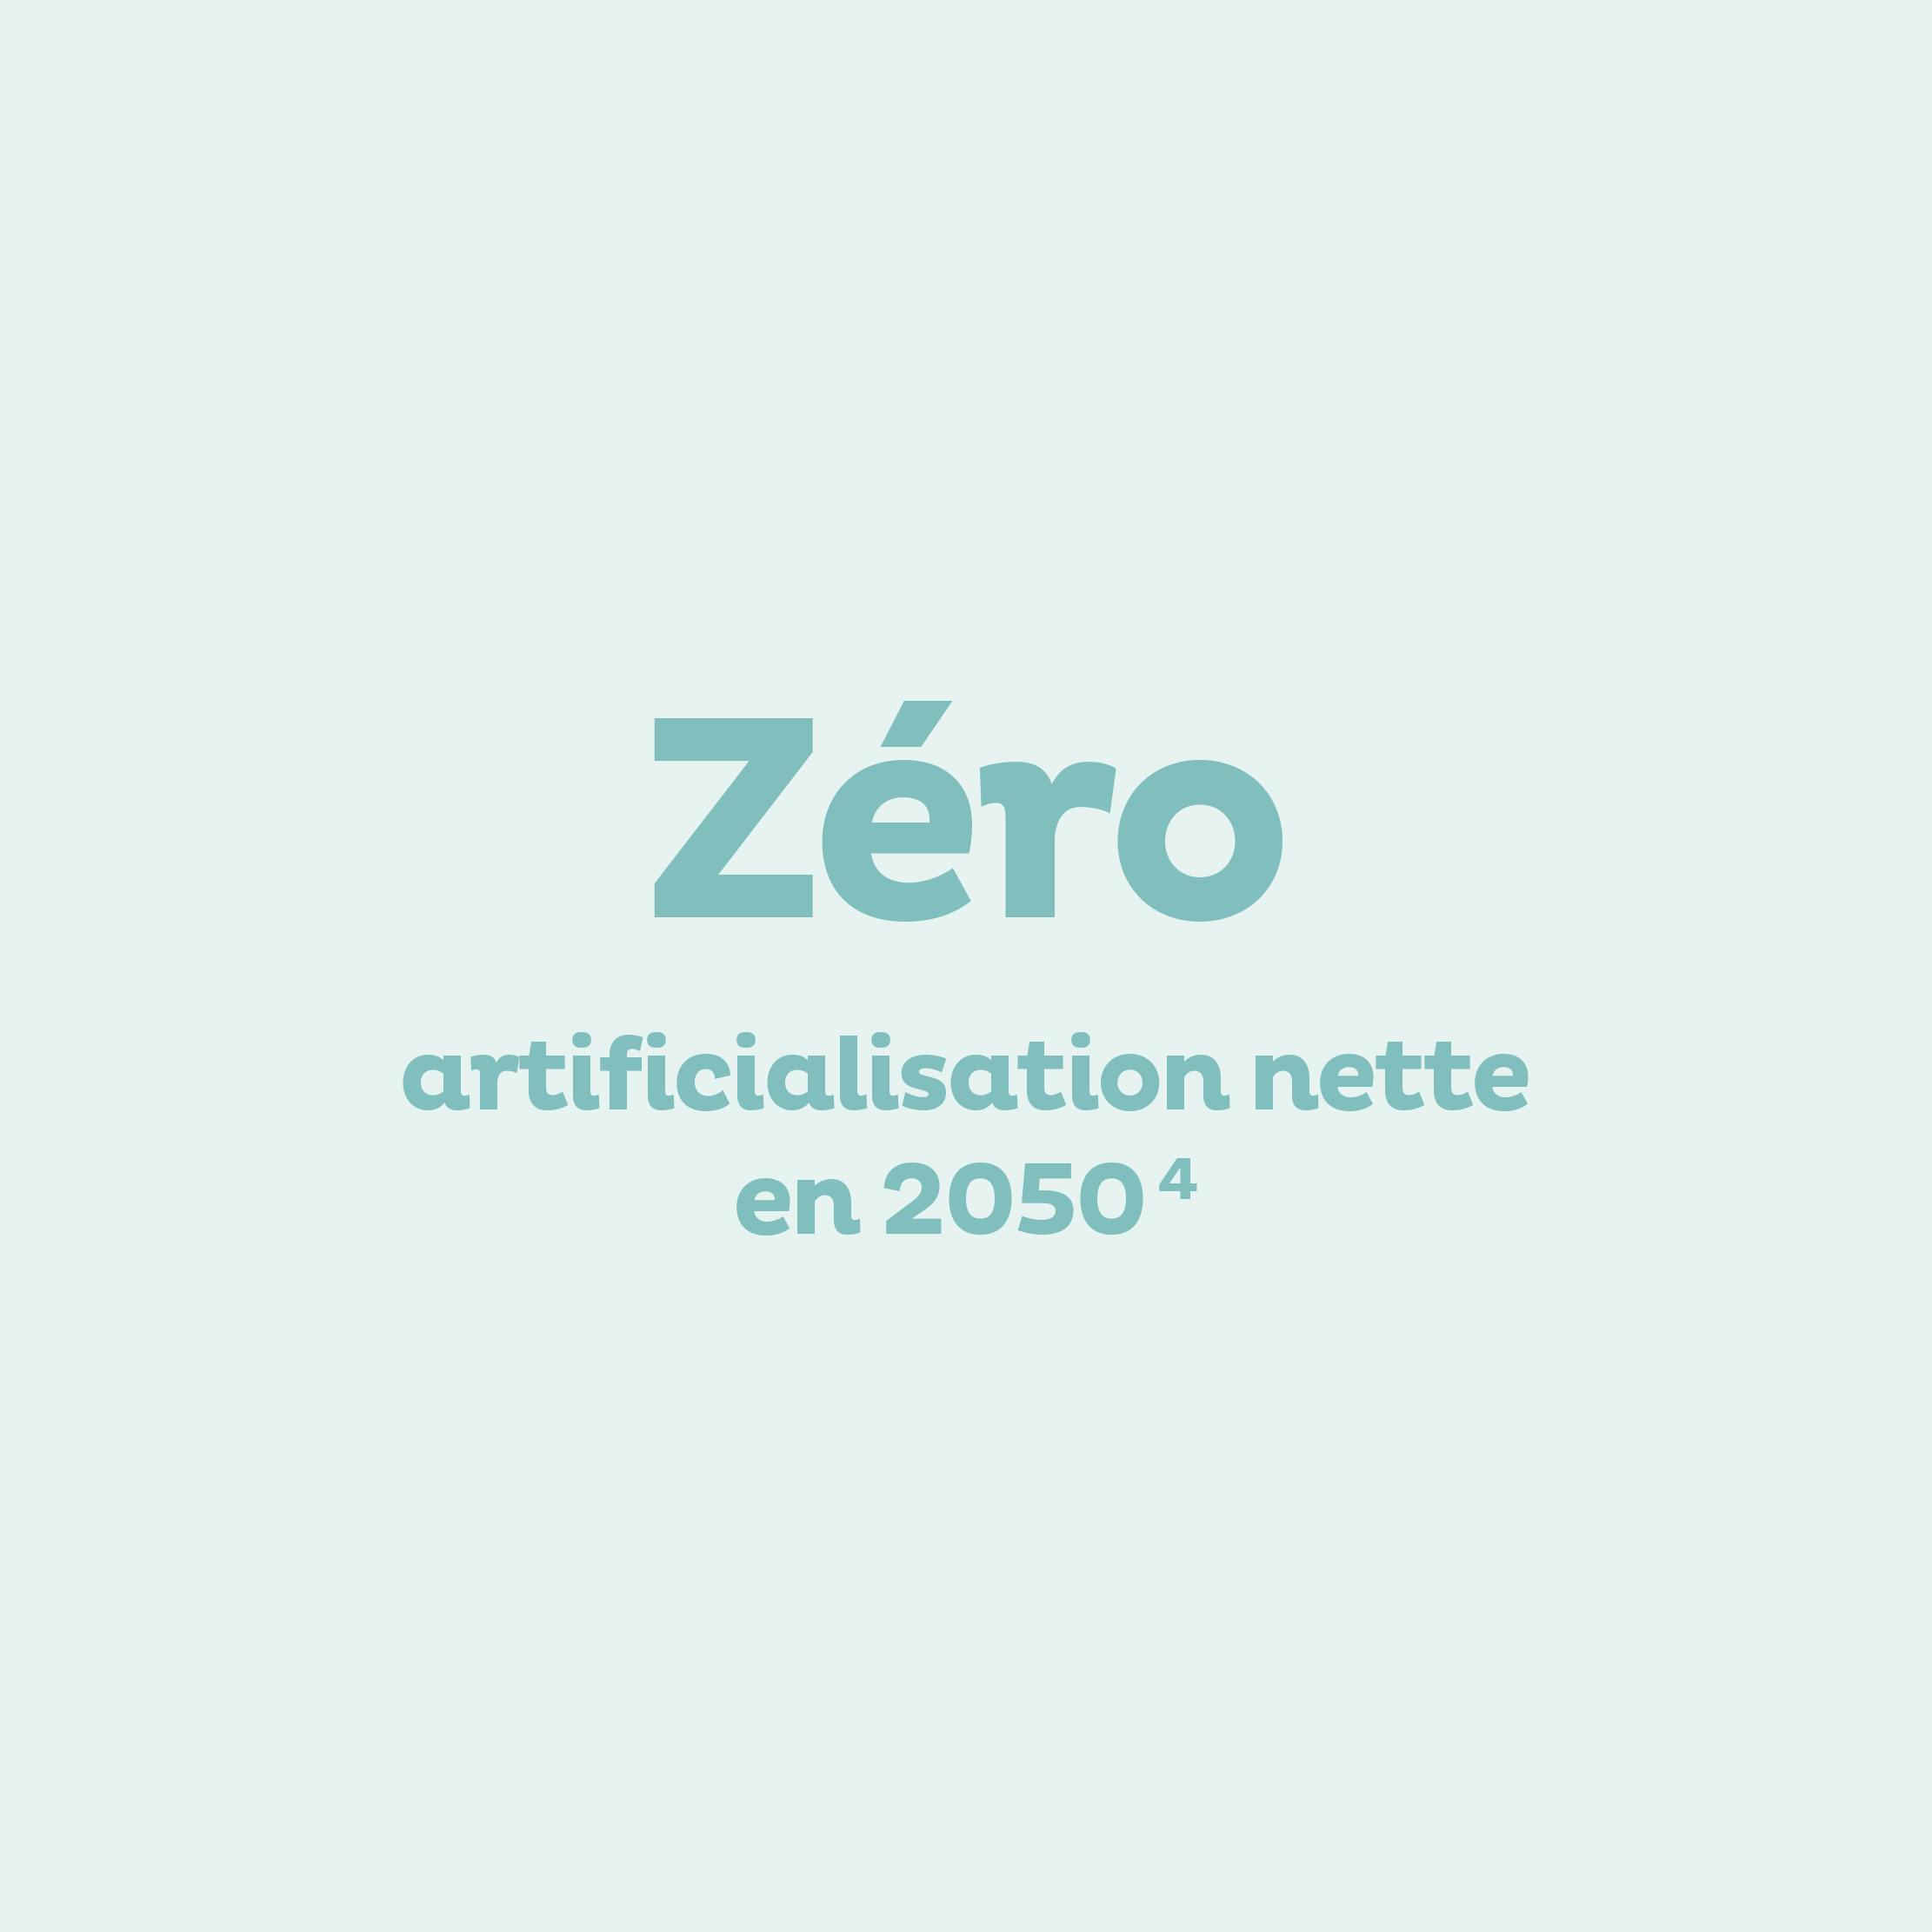 Zéro artificialisation nette en 2050